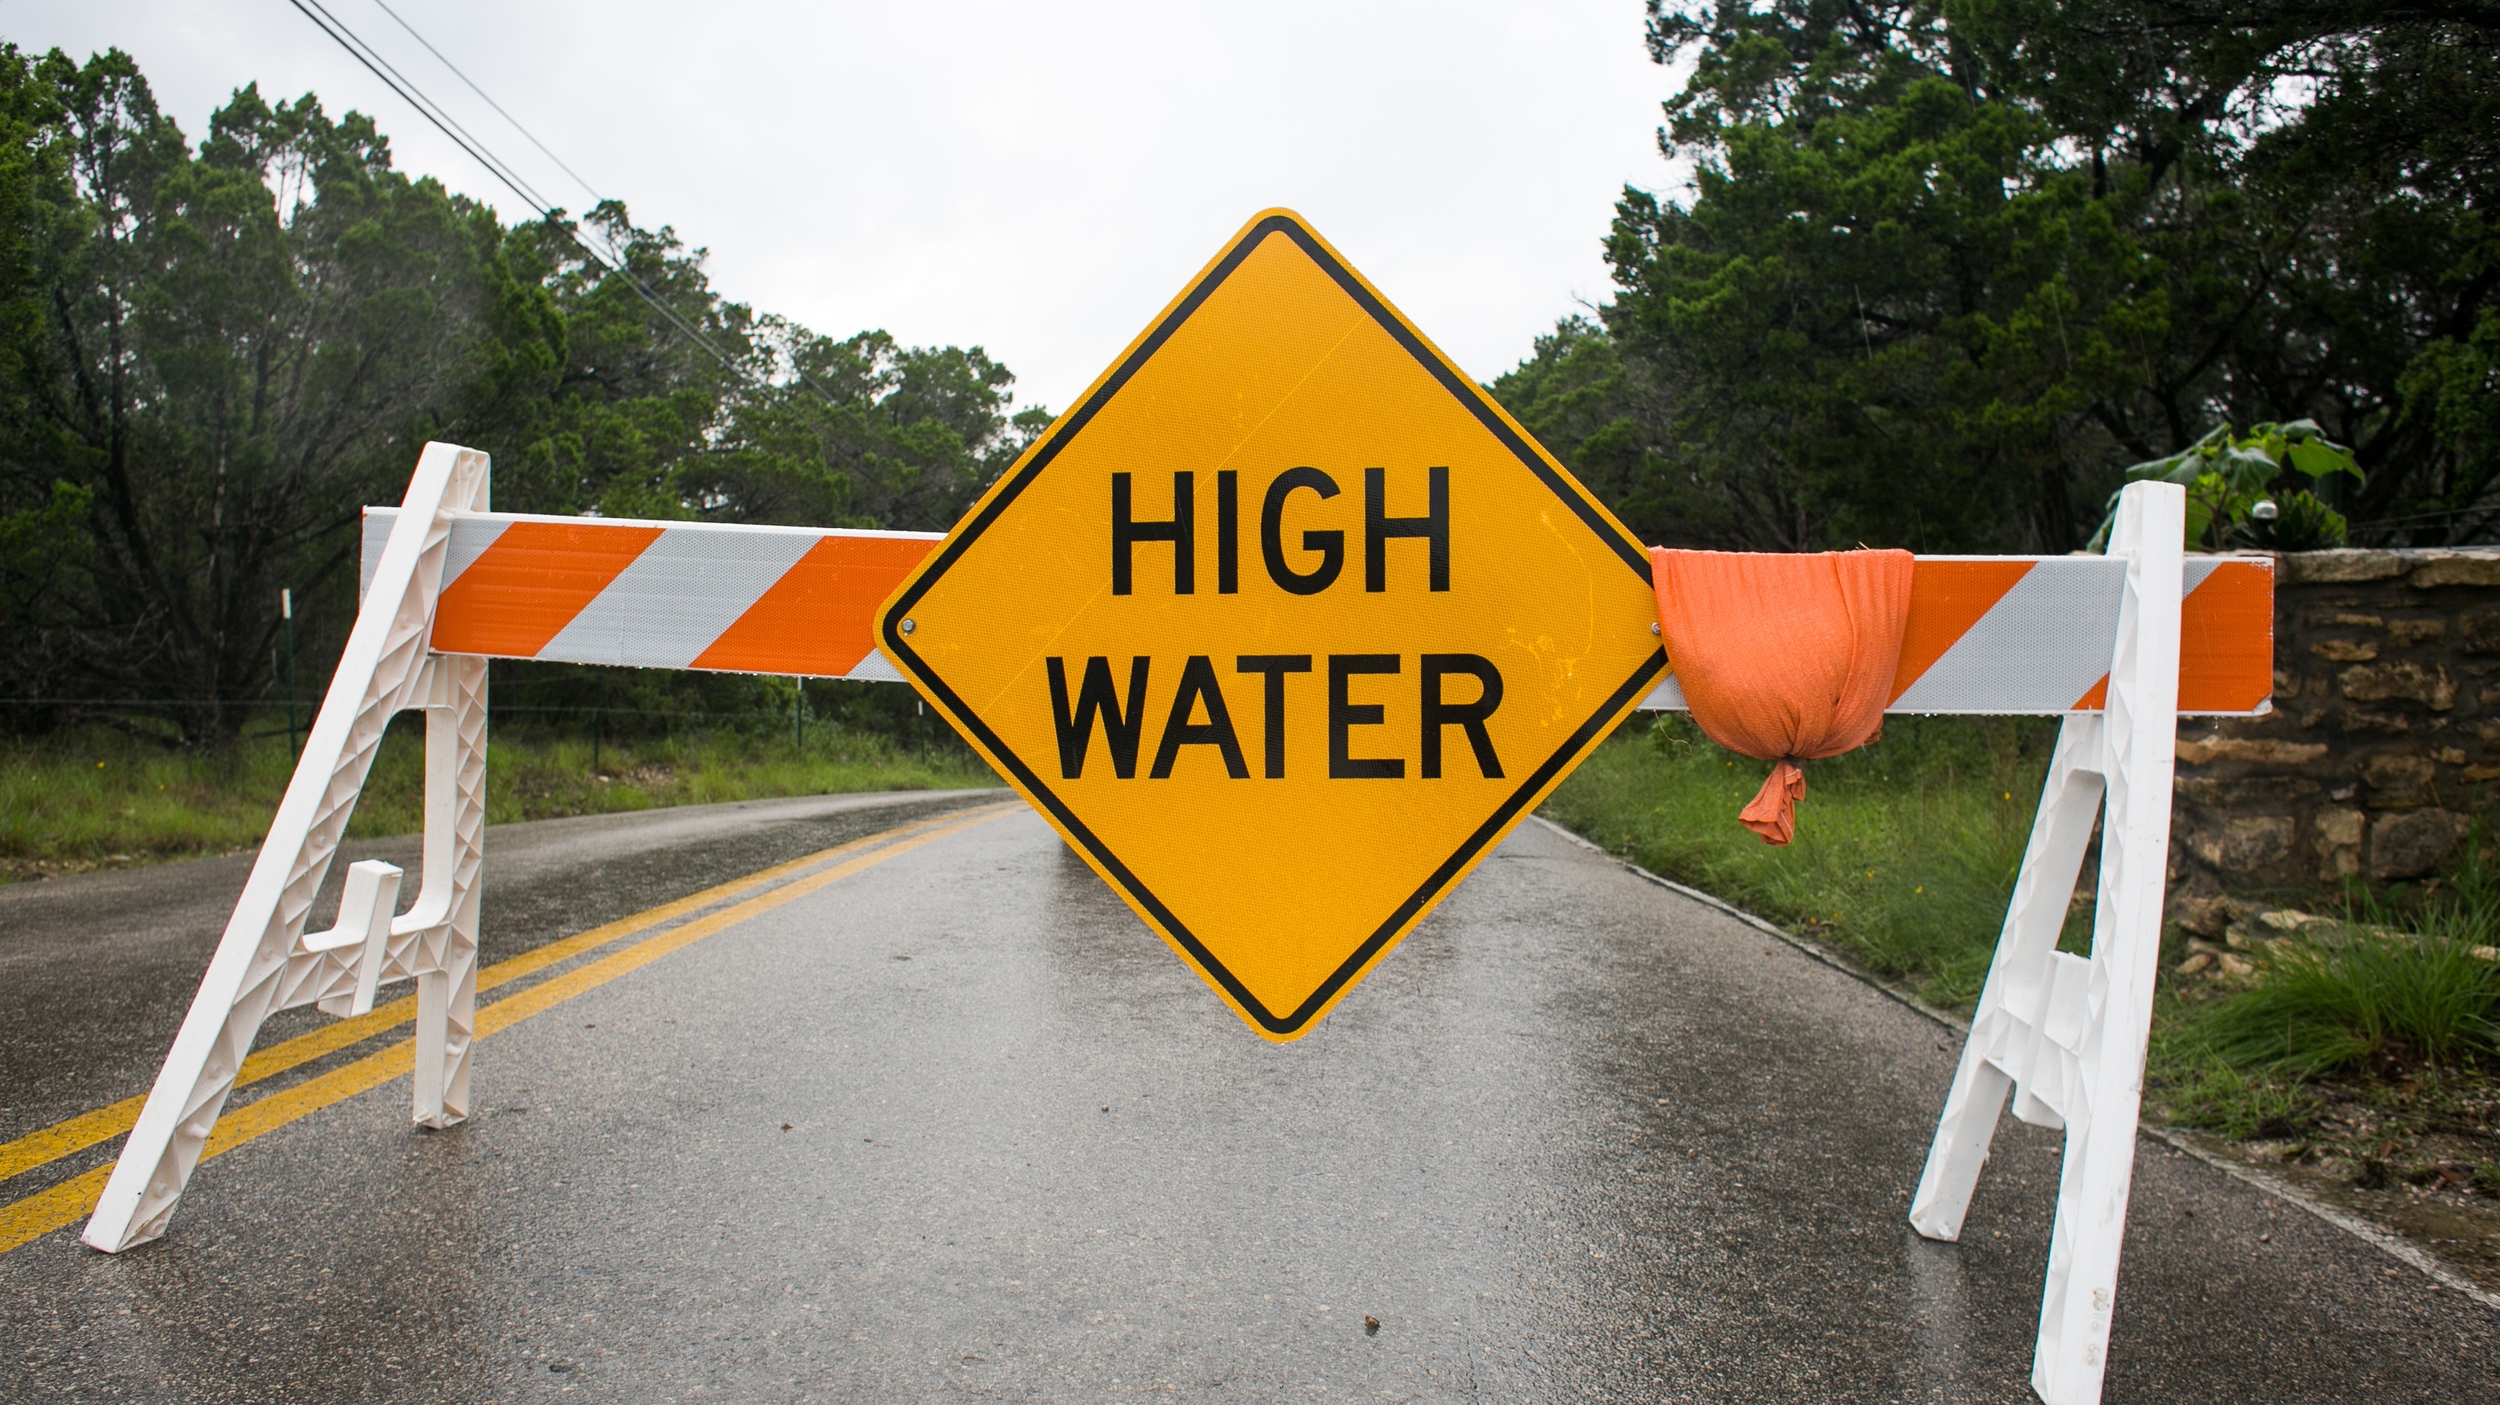 High Water danger sign